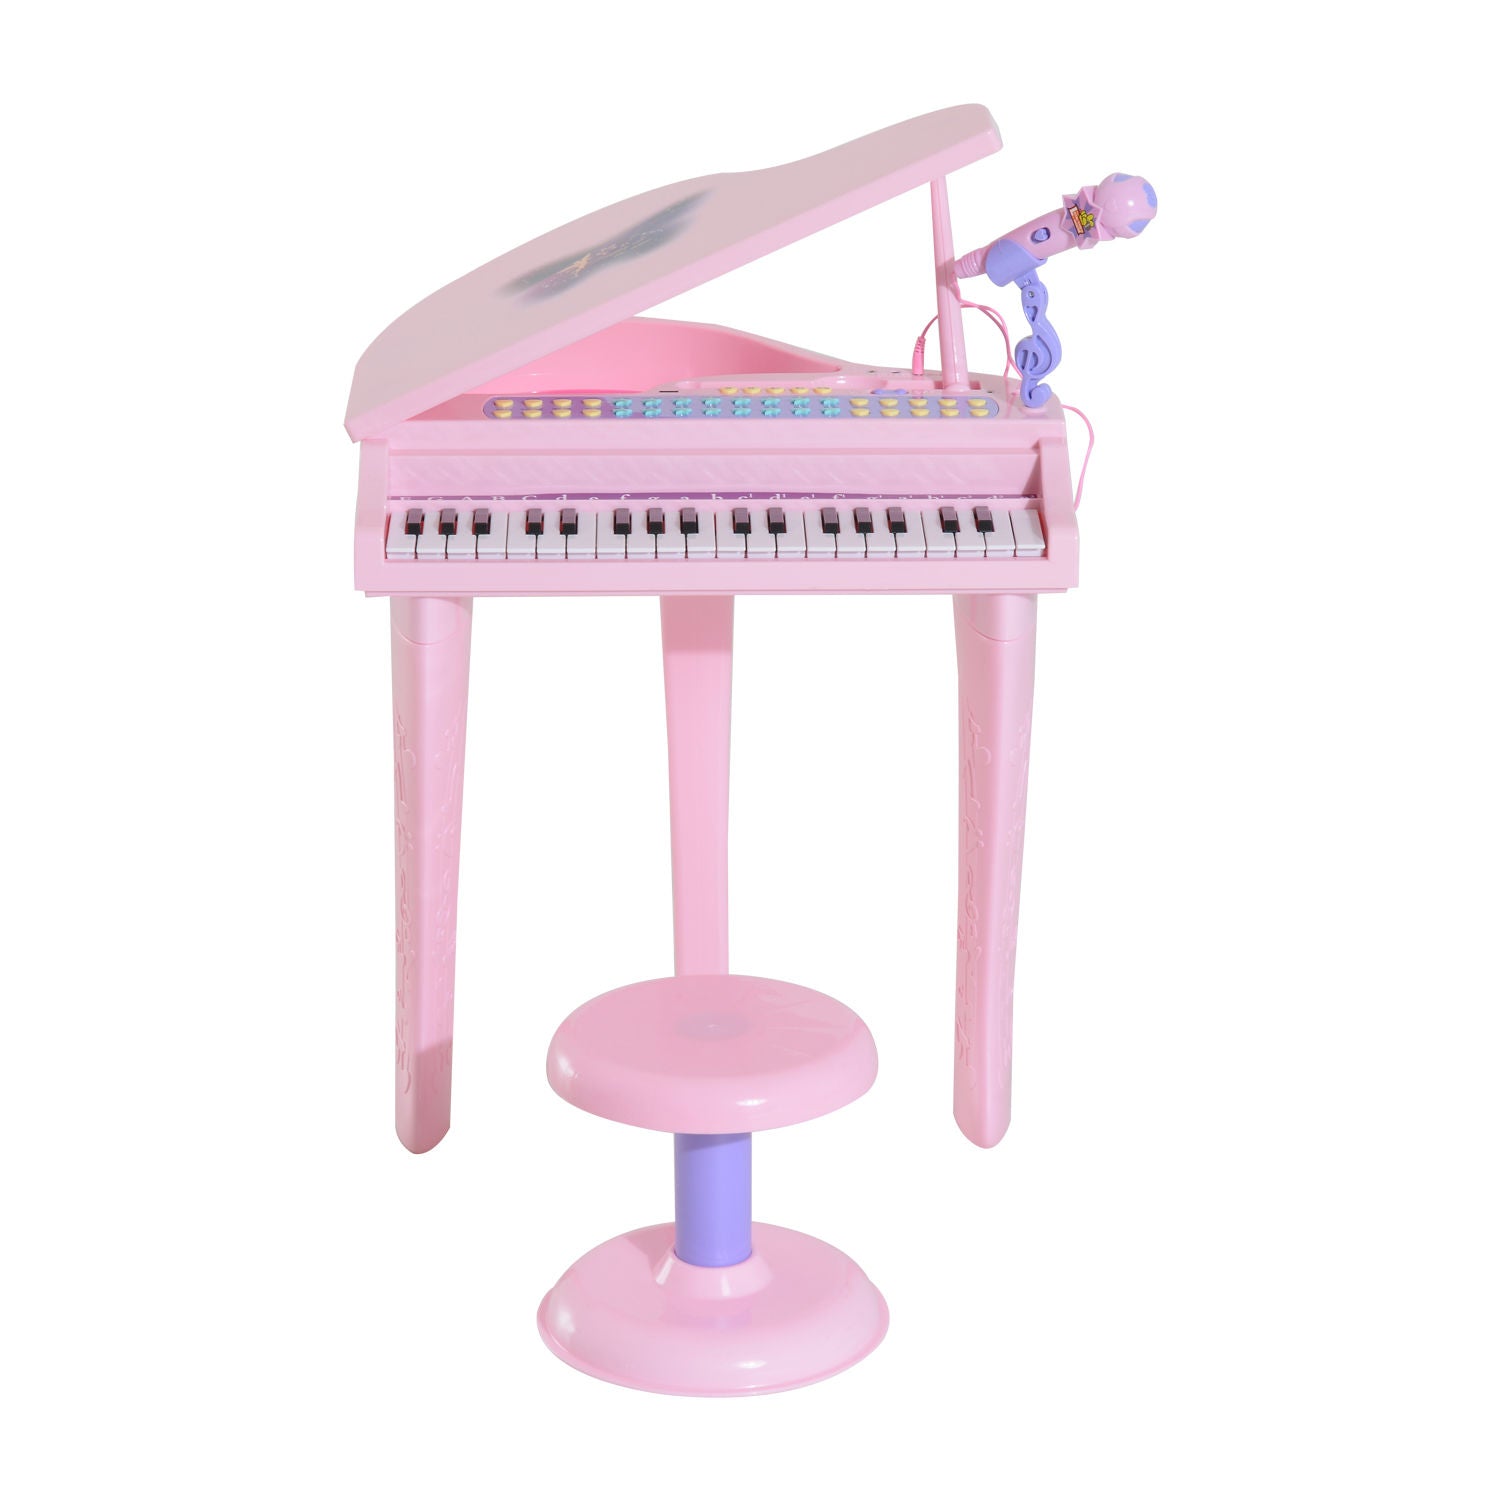 Nancy's Bomba Kinderpiano Muziekinstrument - Roze - Abs - 18,89 cm x 15,35 cm x 27,16 cm